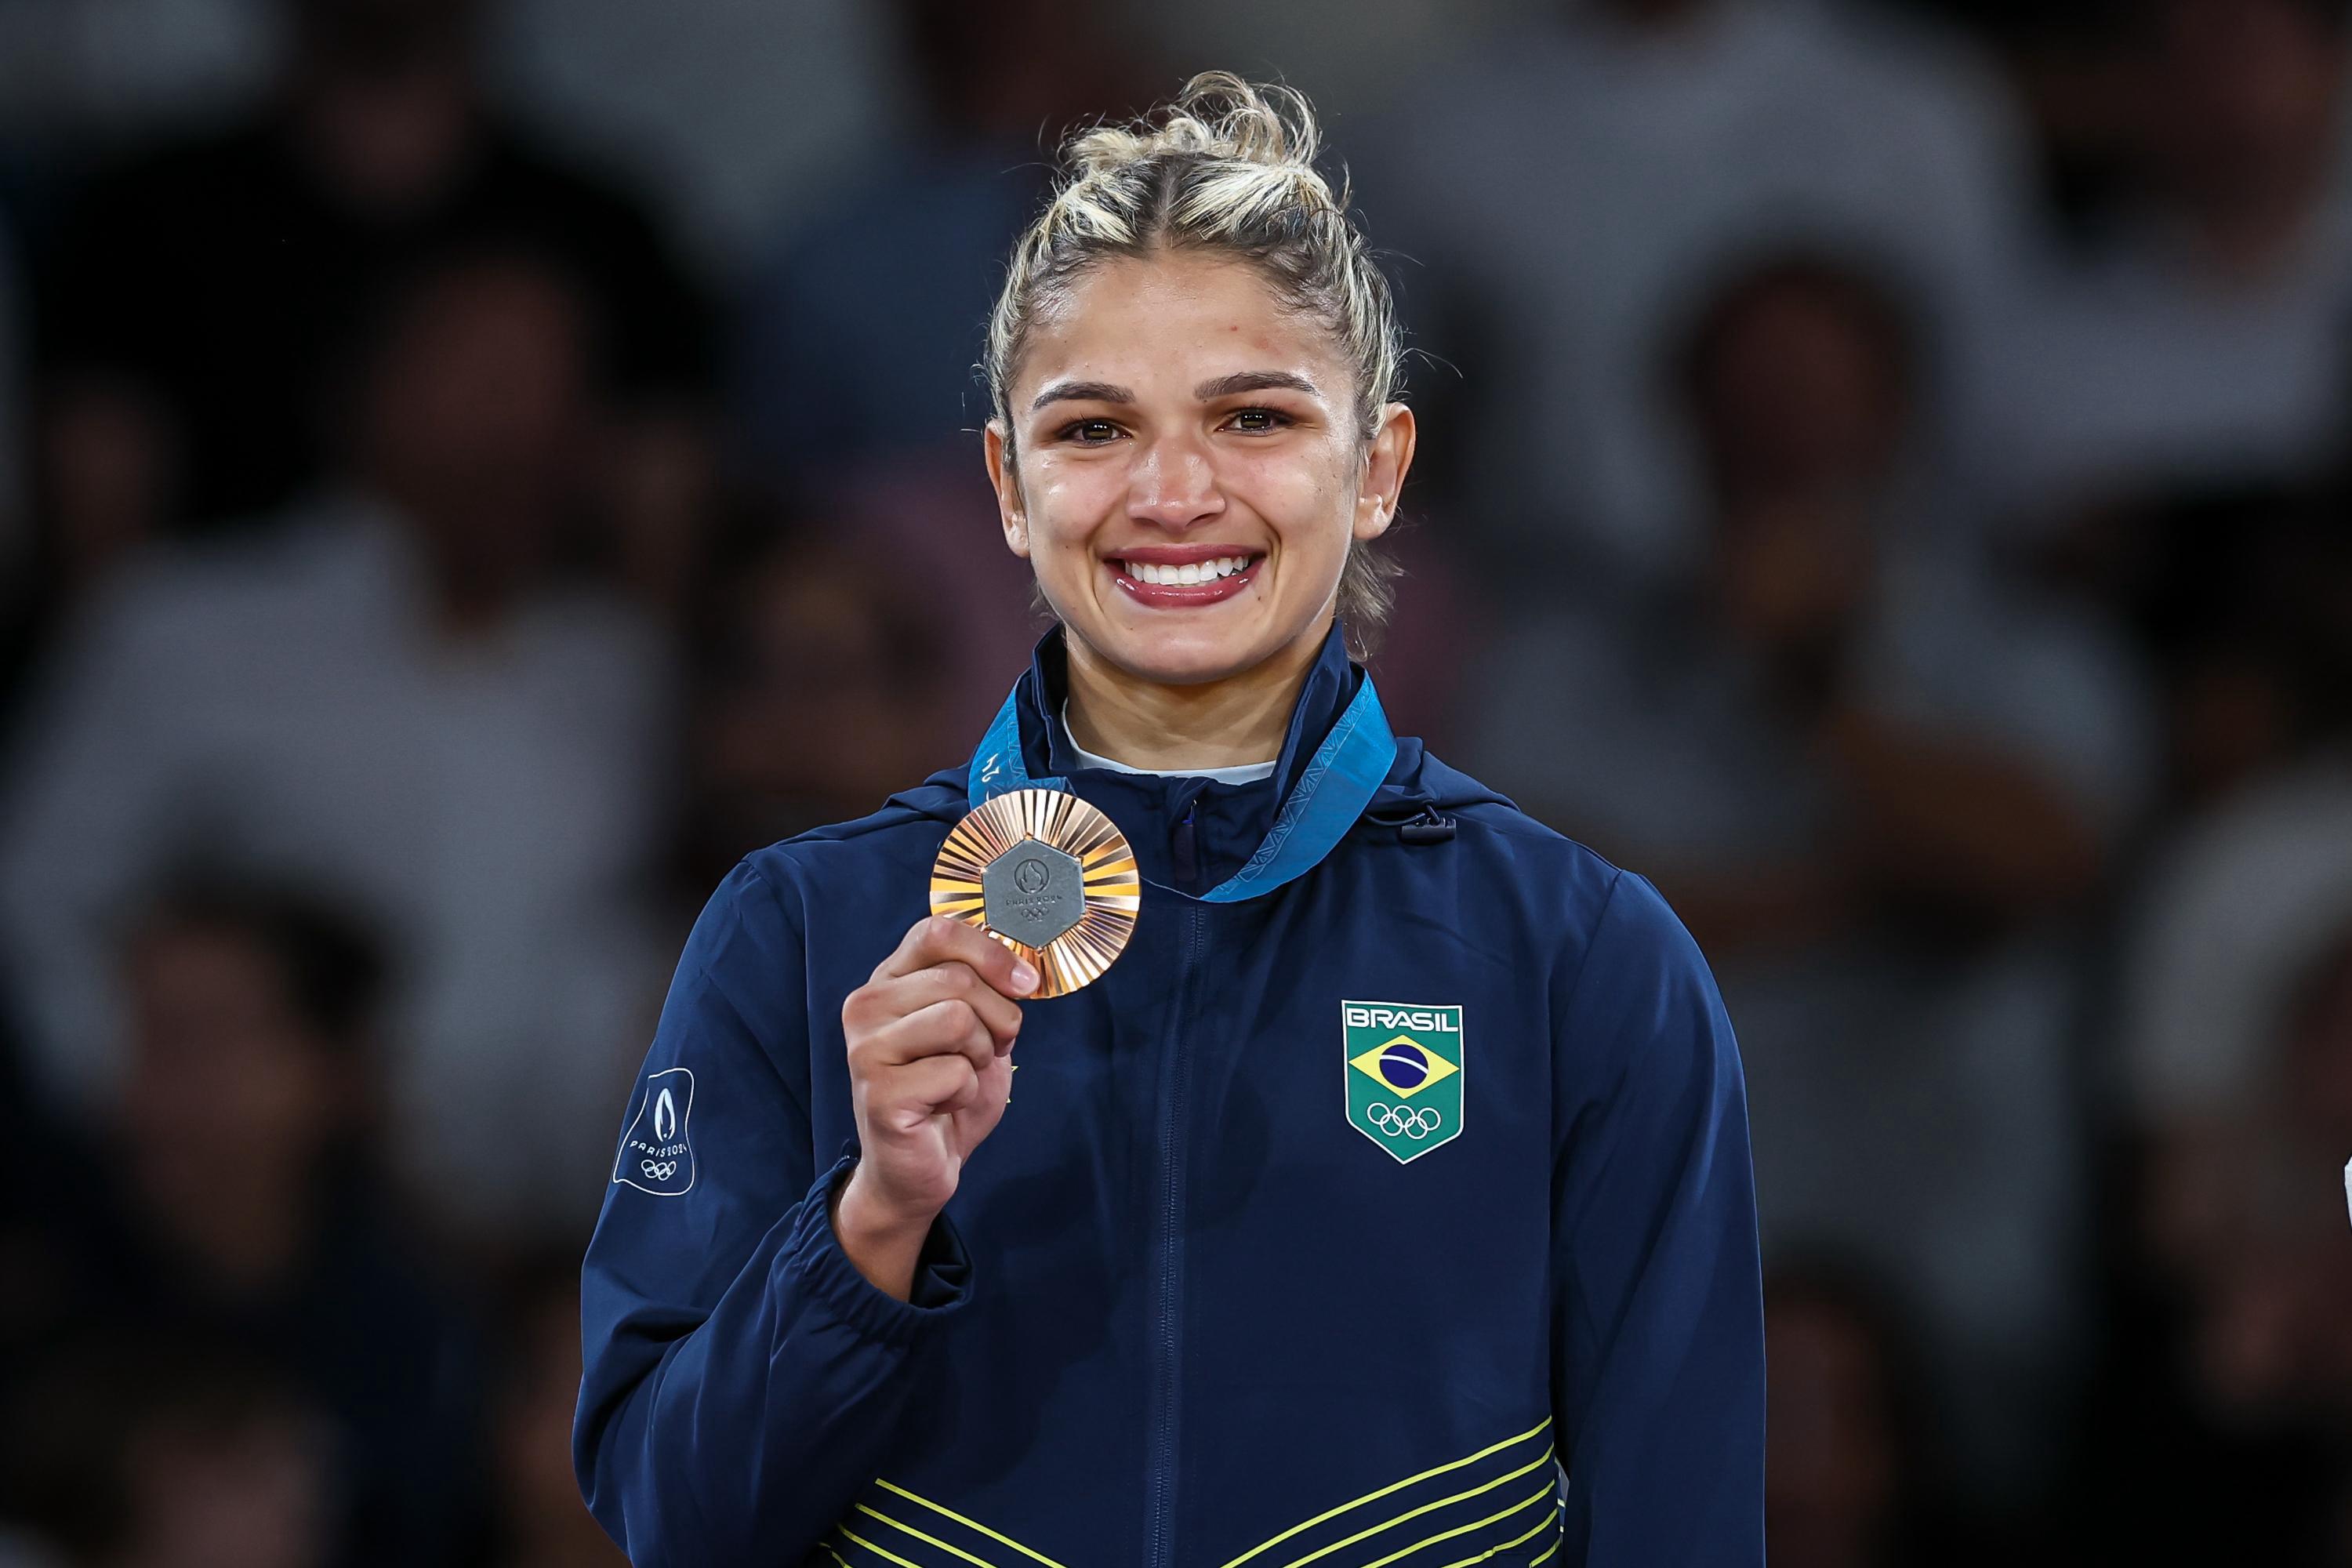 Larissa Pimenta conquista medalha de bronze no judô nos Jogos Olímpicos Paris 2024